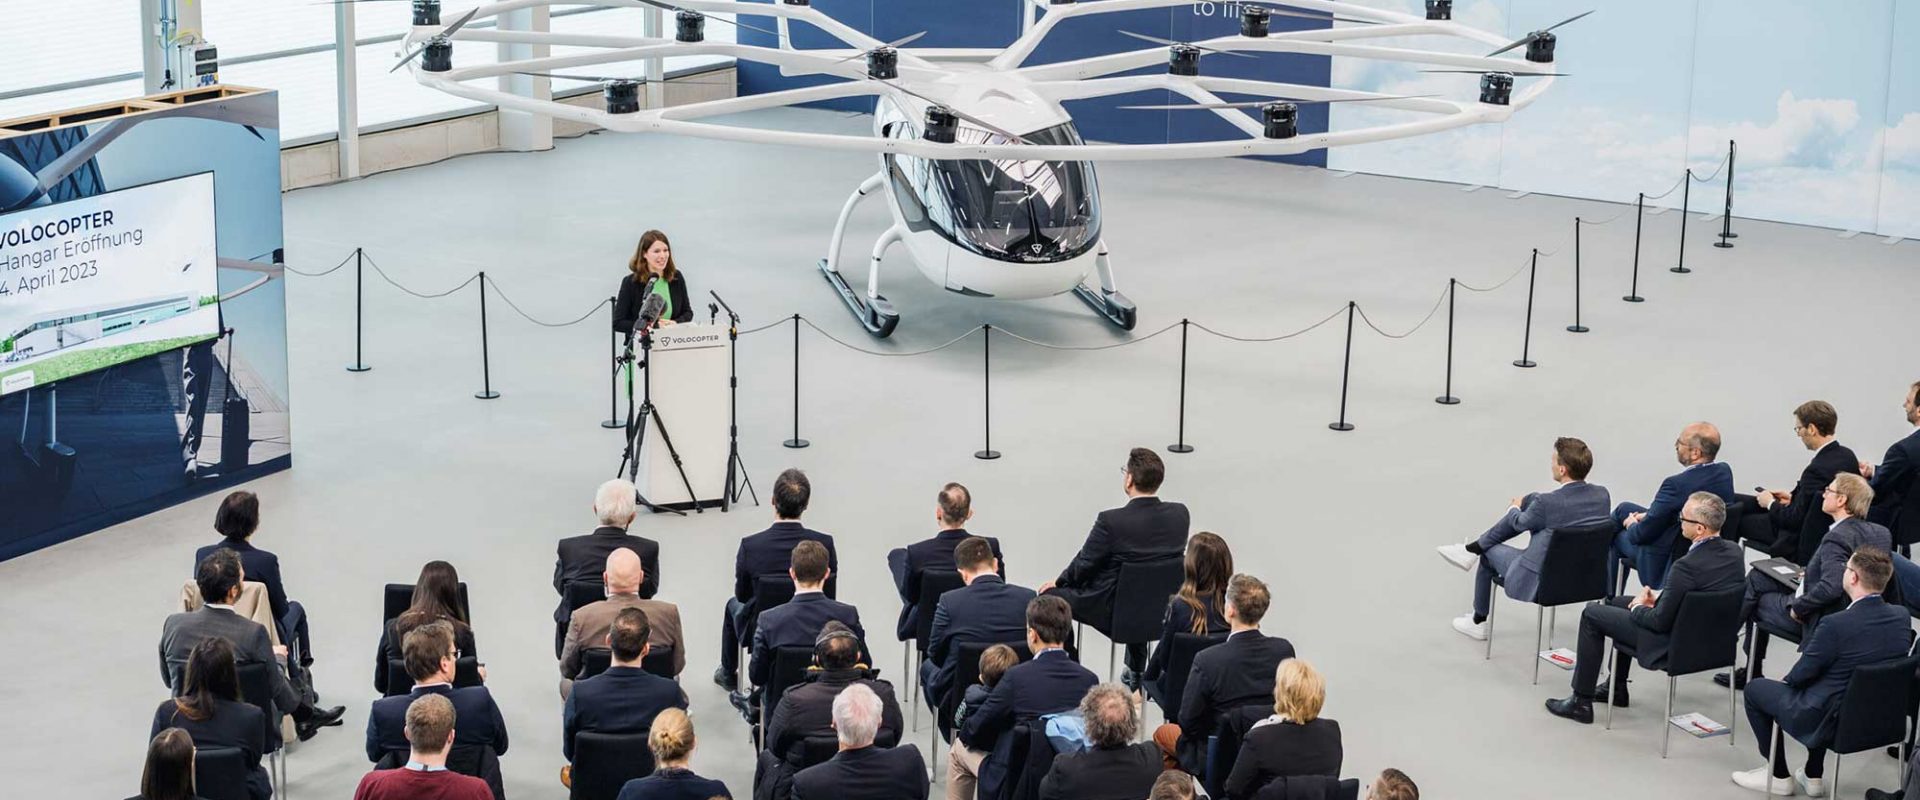 Volocopter, Hangar-Opening